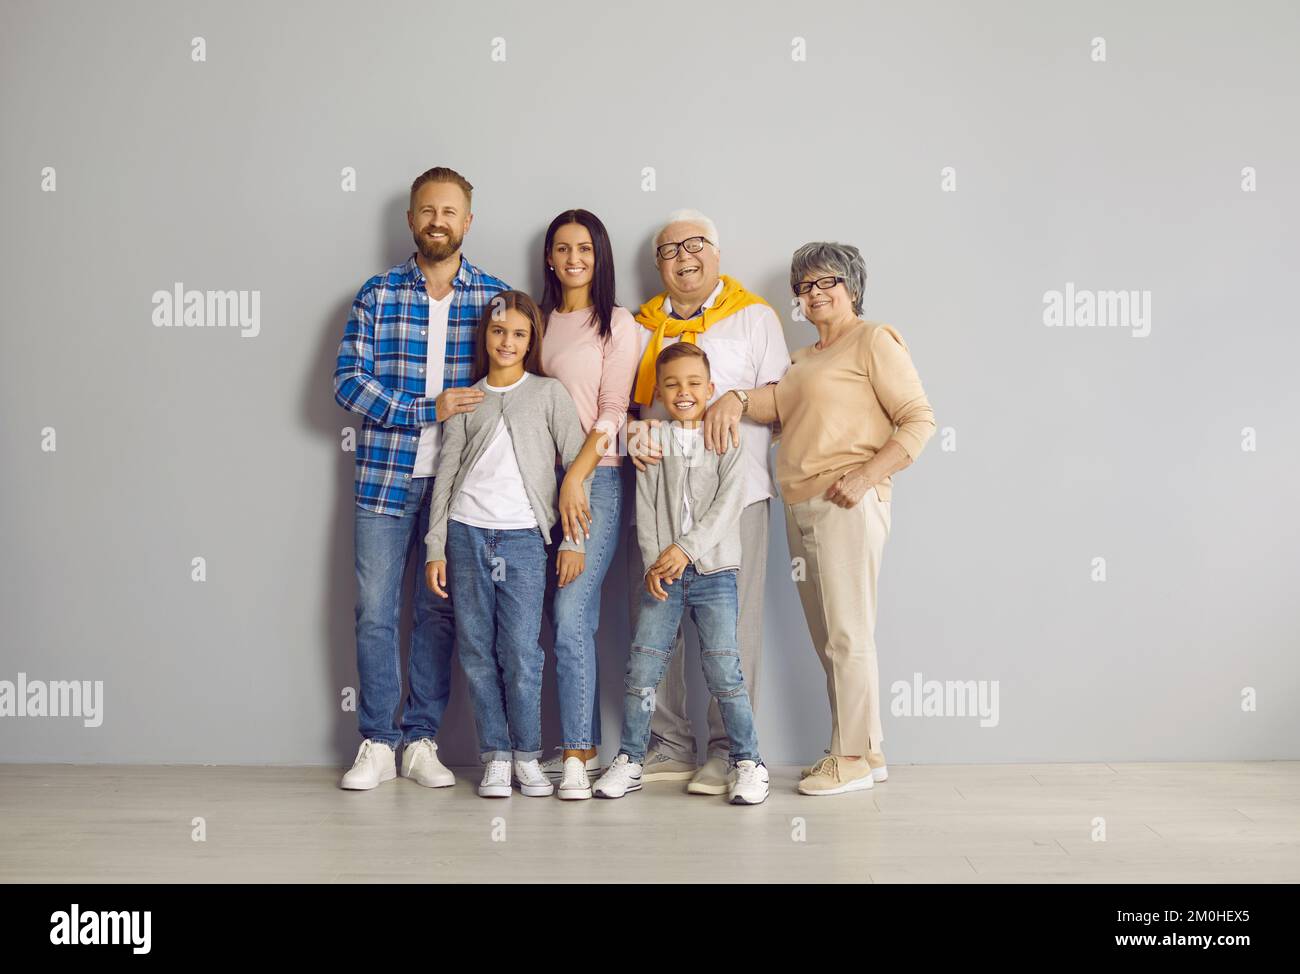 Porträt einer glücklichen, fröhlichen Familie, die alle zusammen an der Wand im Studio steht Stockfoto